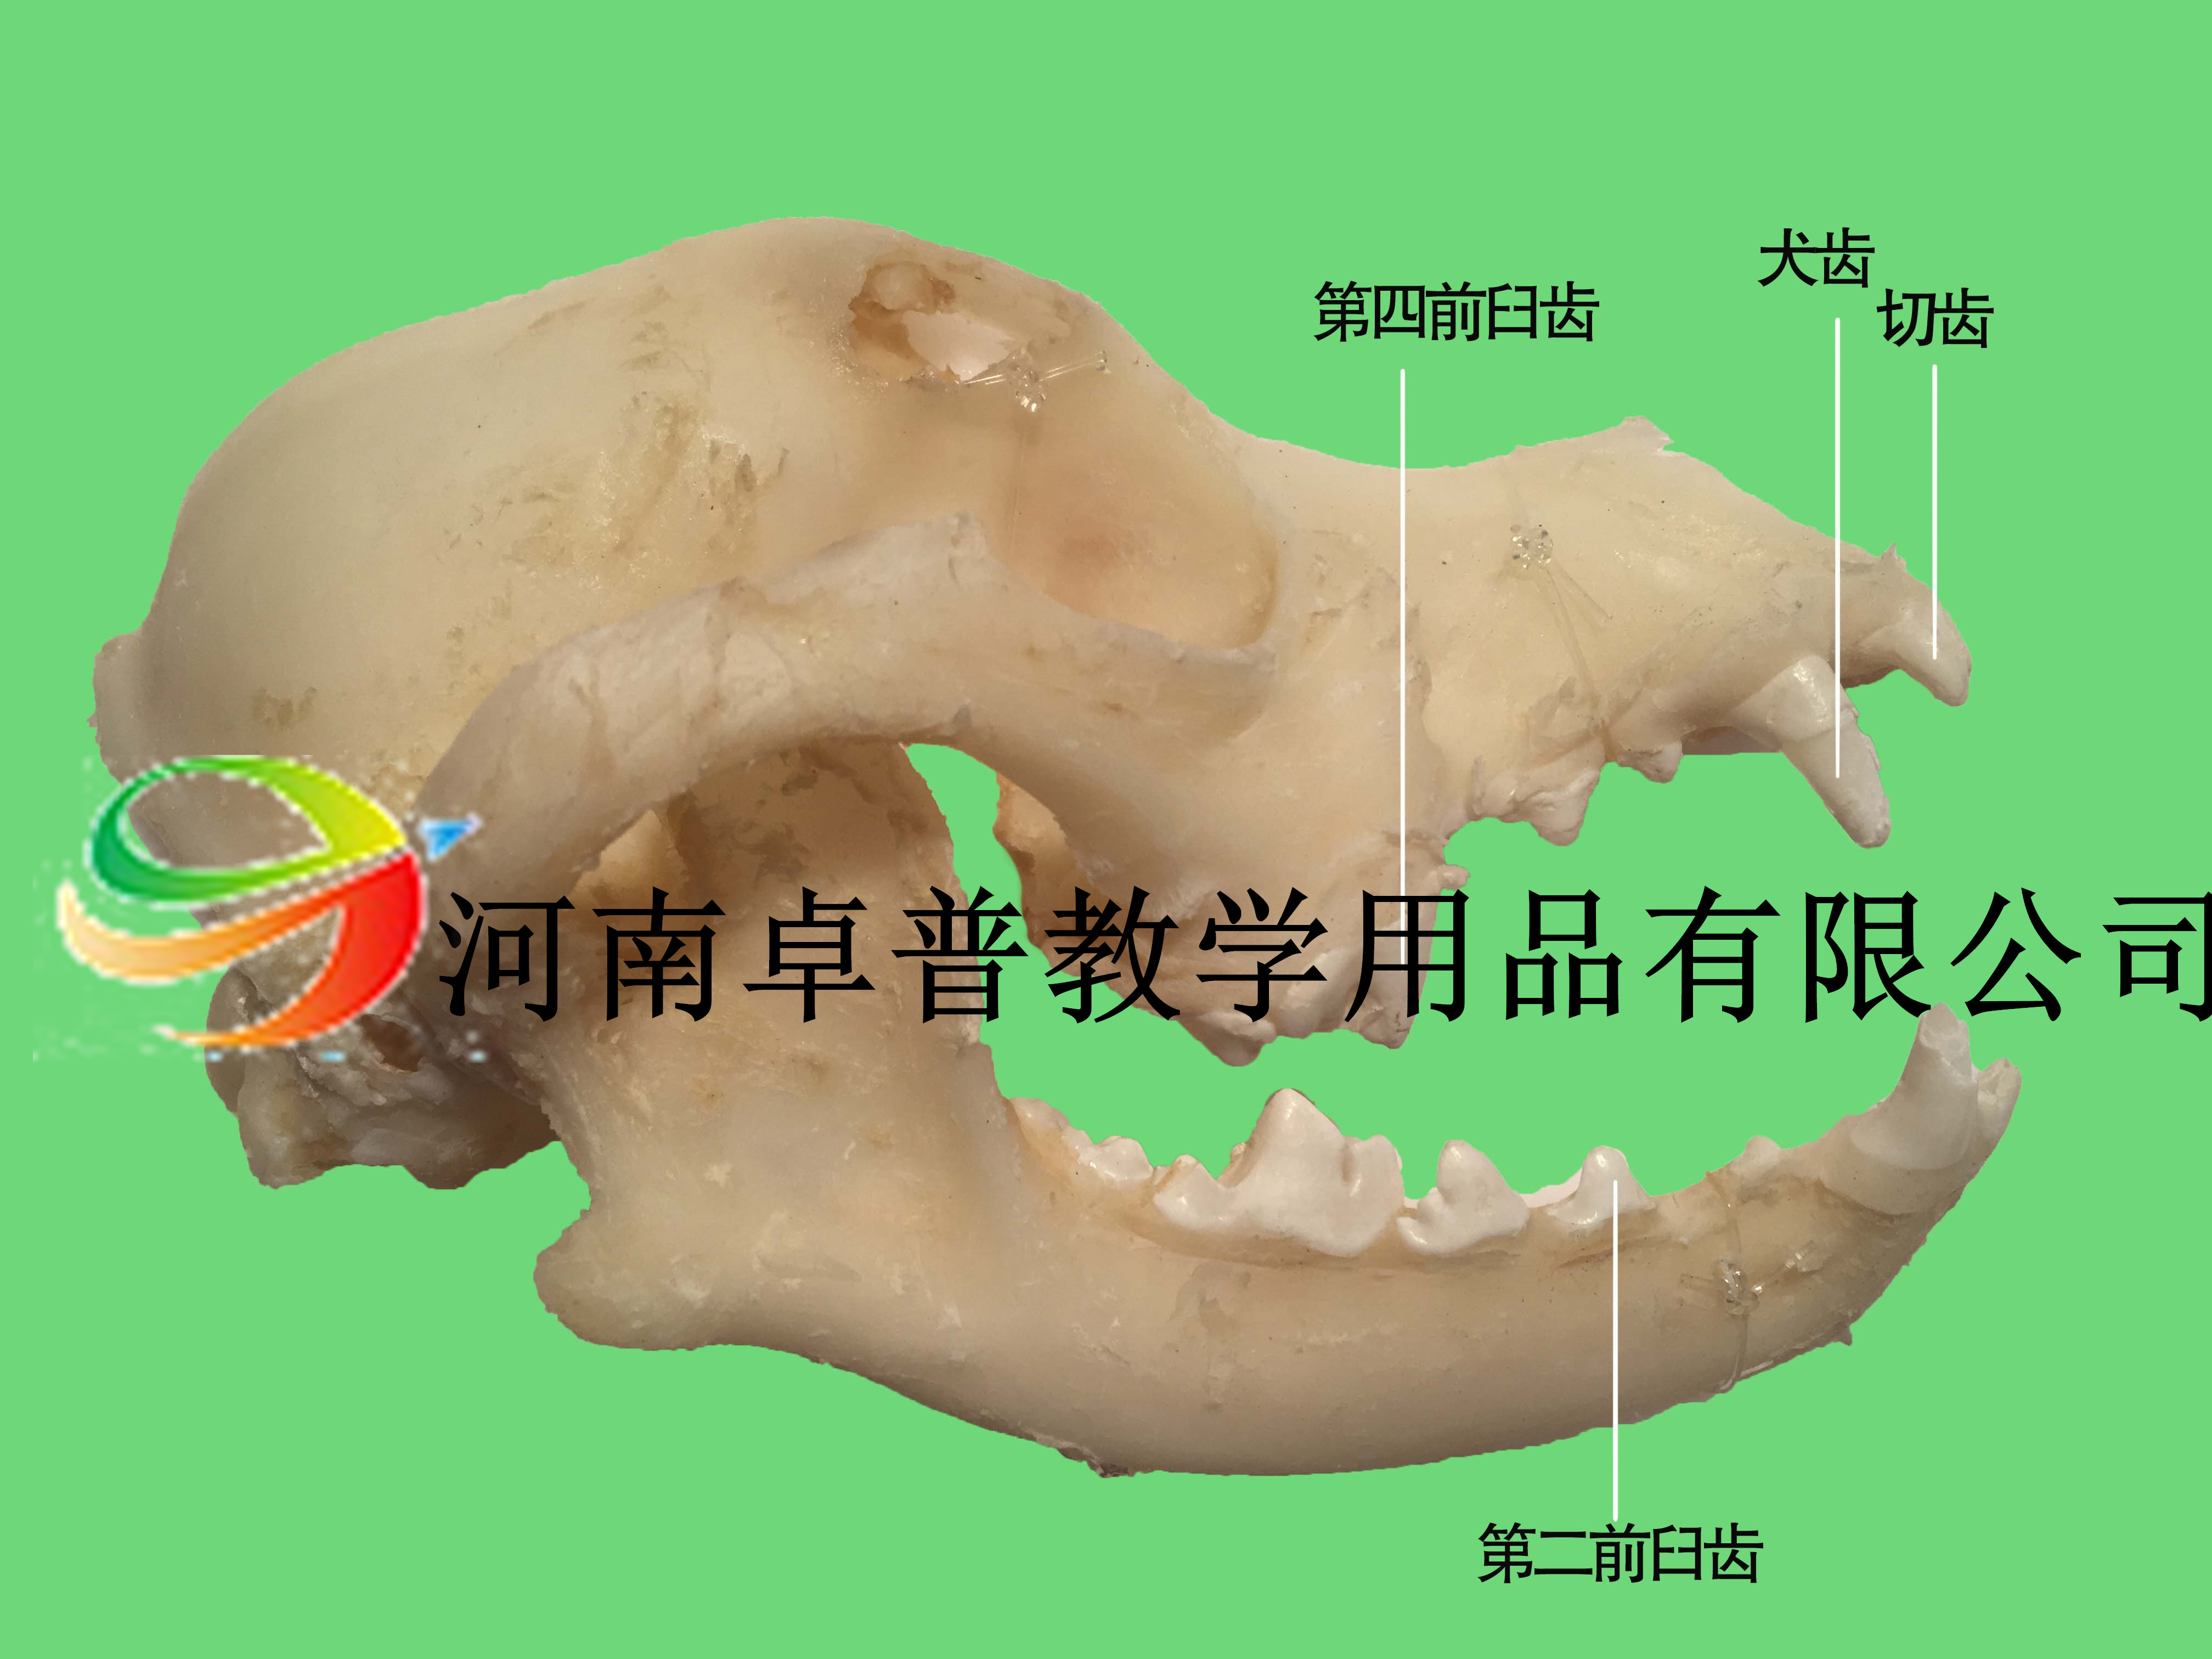 解剖标本（犬齿右侧观）